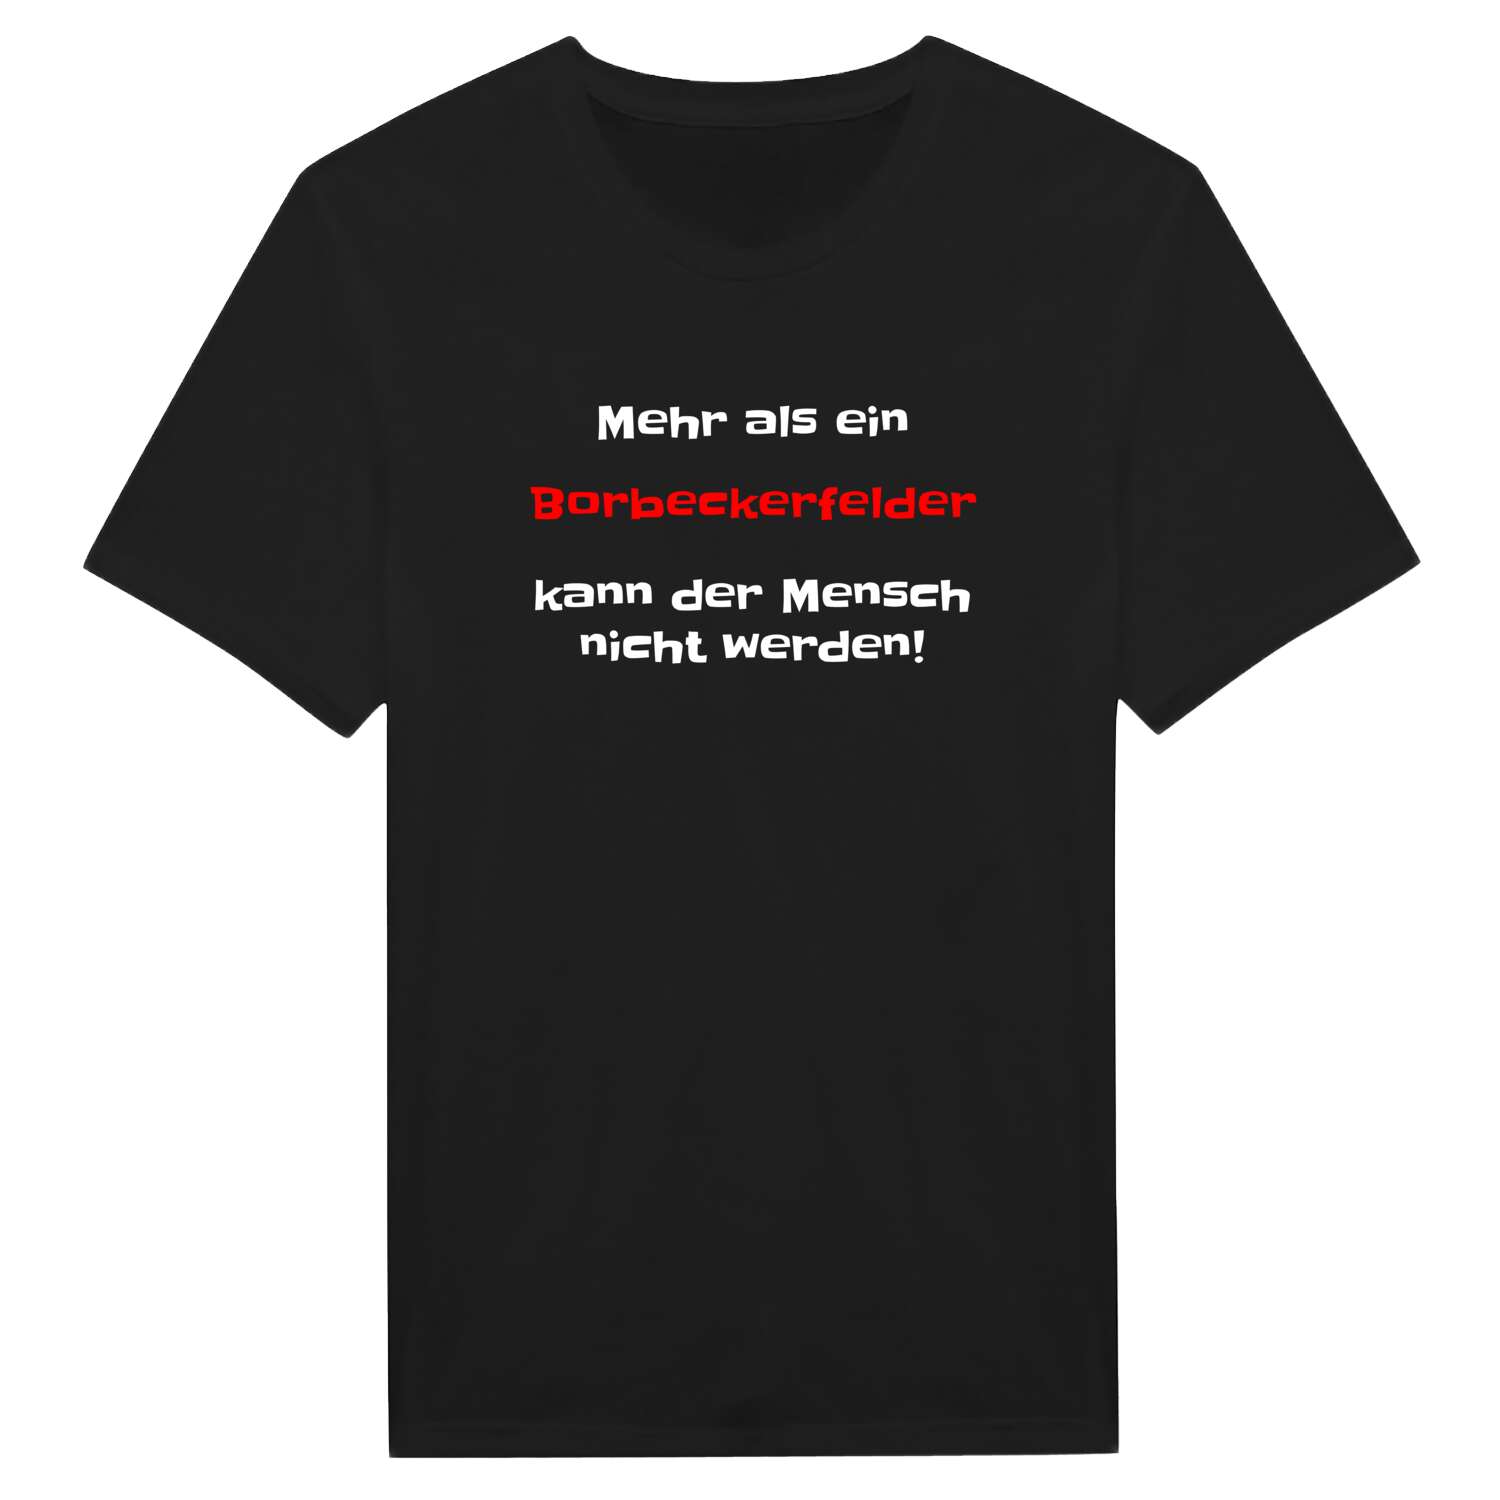 Borbeckerfeld T-Shirt »Mehr als ein«